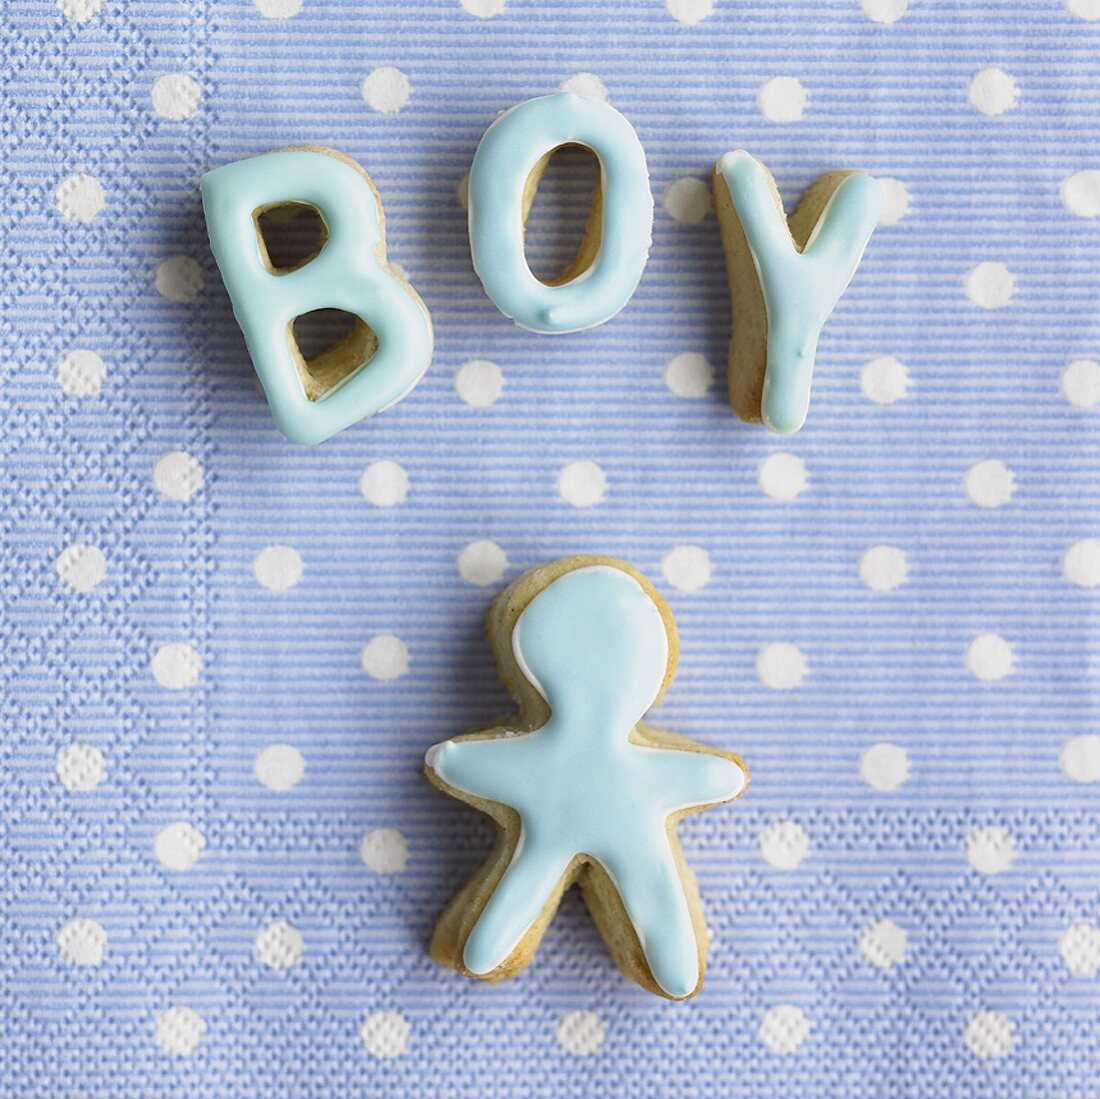 Gebackene Buchstaben 'Boy' und Figur auf einer Serviette